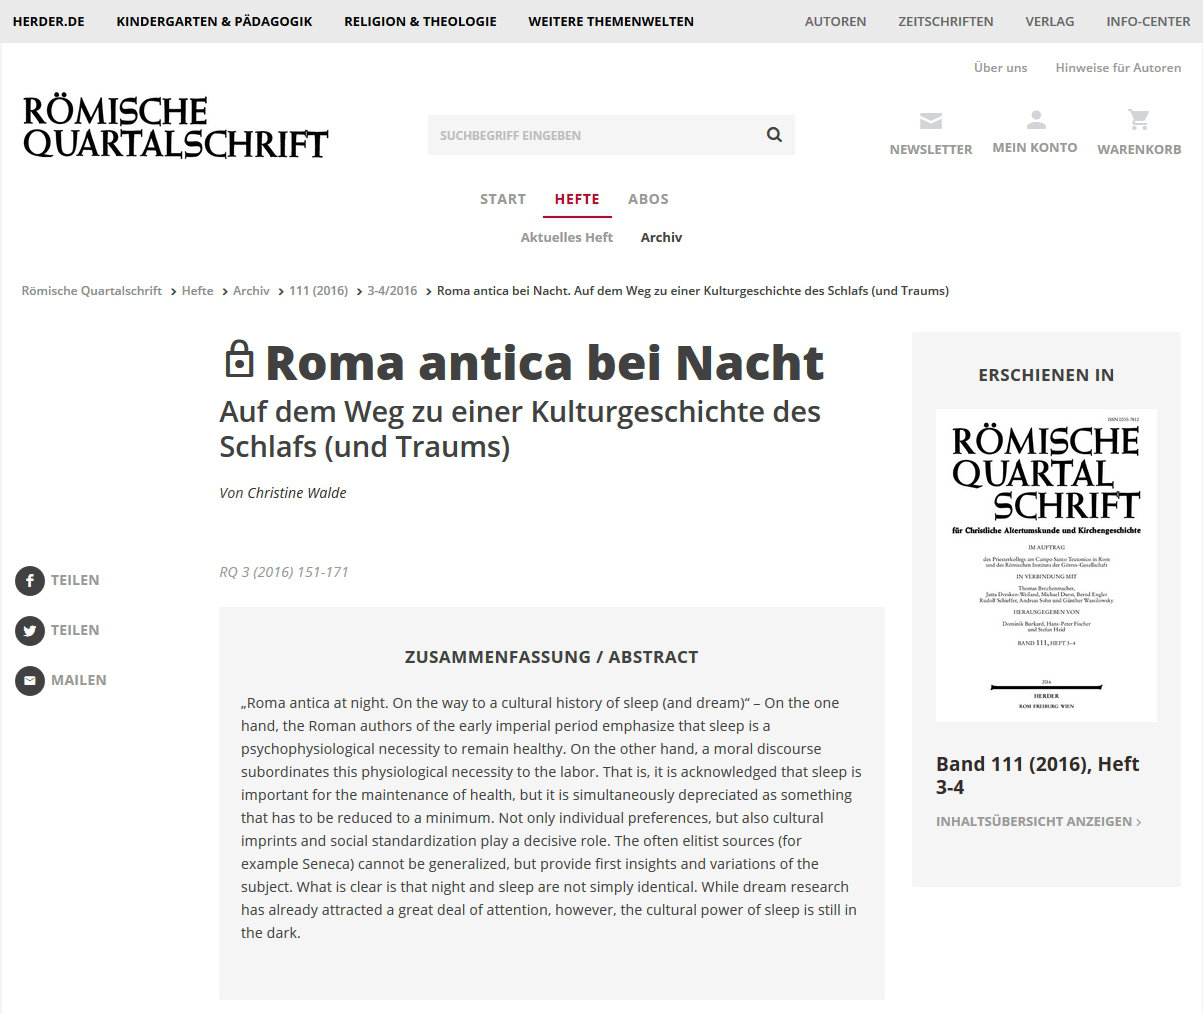 Römische Quartalschrift online: Abonnement